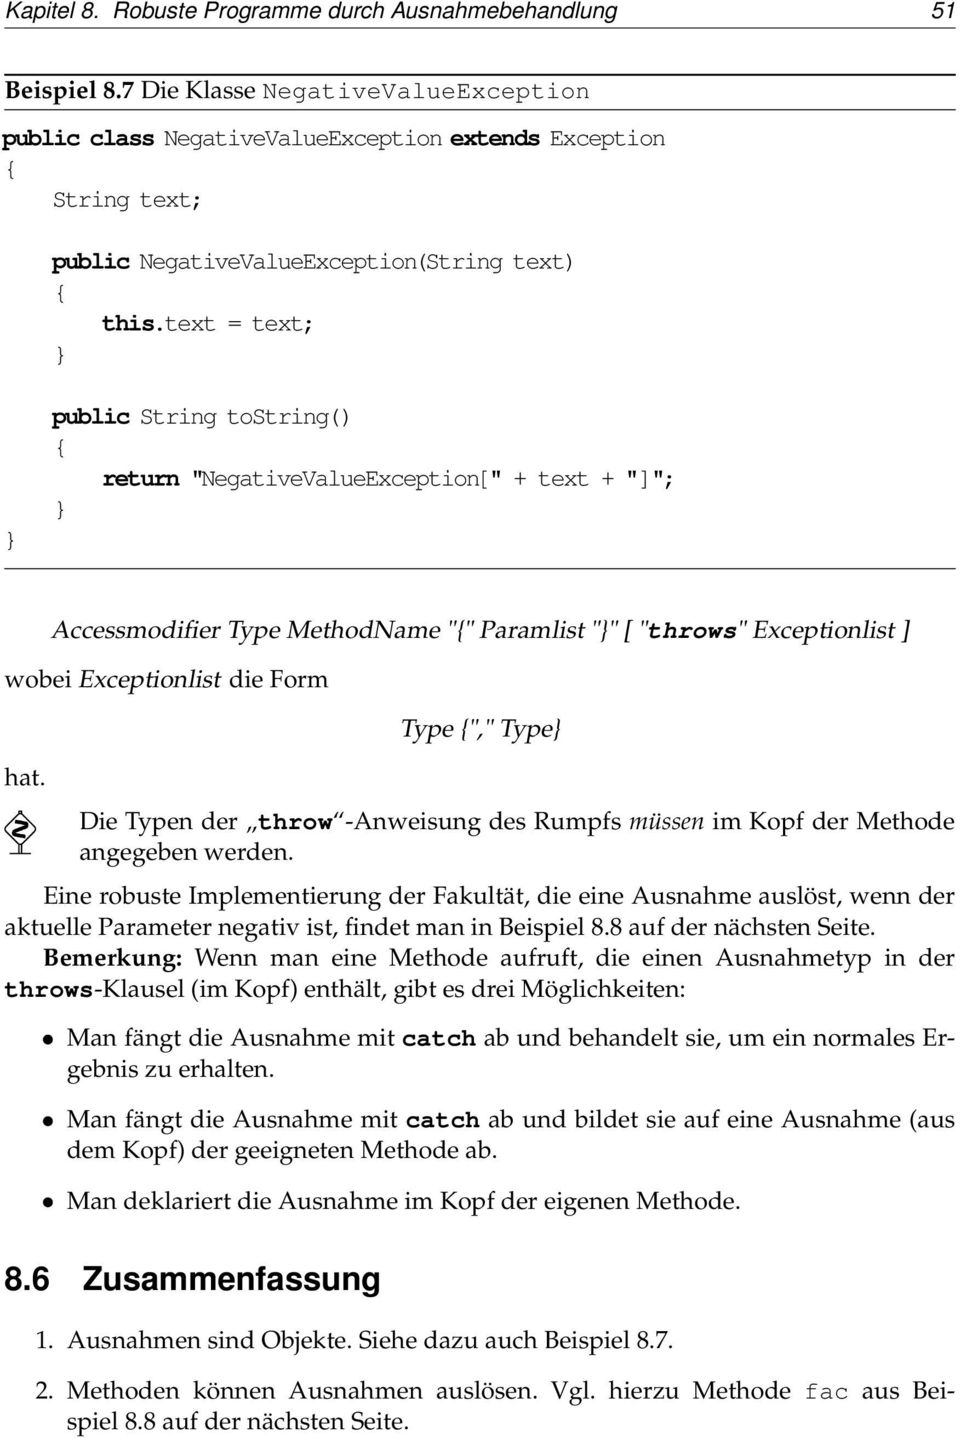 text = text; public String tostring() return "NegativeValueException[" + text + "]"; Accessmodifier Type MethodName "" Paramlist "" [ "throws" Exceptionlist ] wobei Exceptionlist die Form hat.